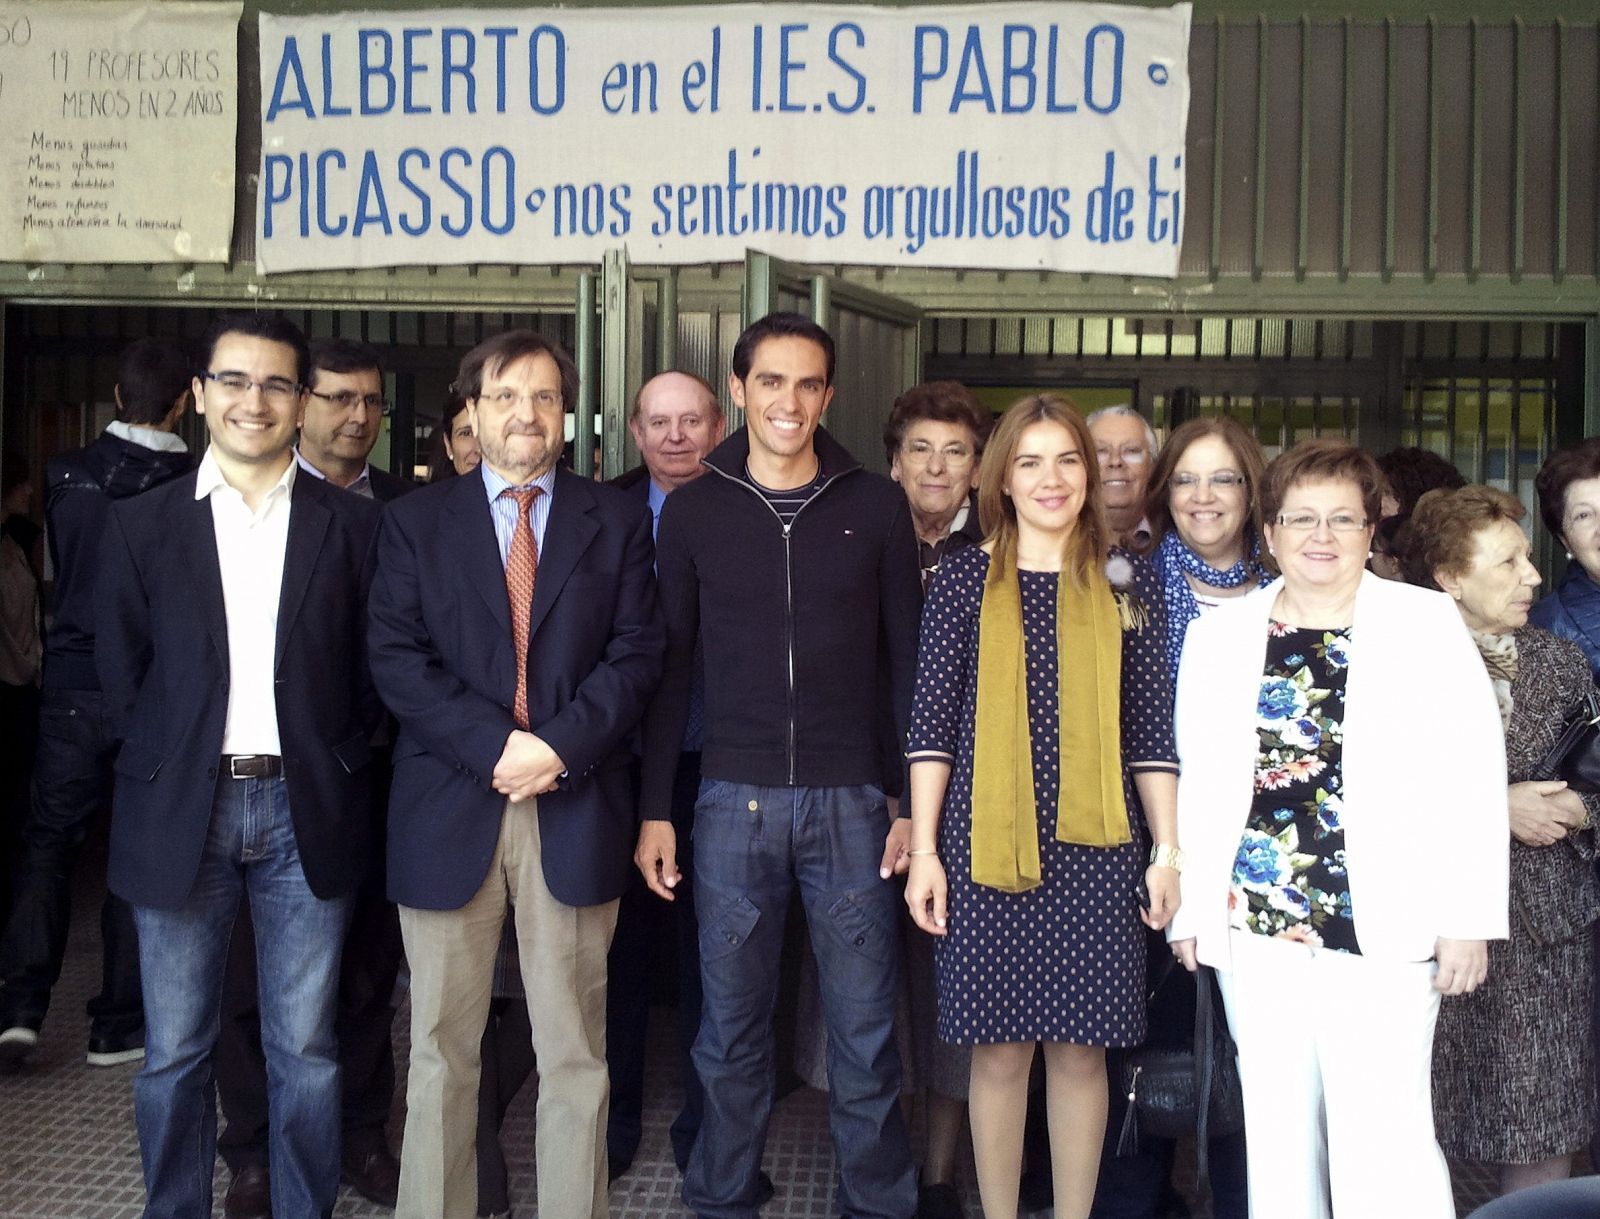 El ciclista español Alberto Contador (c), en el instituto público de Pinto "Pablo Picasso", donde dieron un emotivo homenaje a su antiguo estudiante más ilustre.